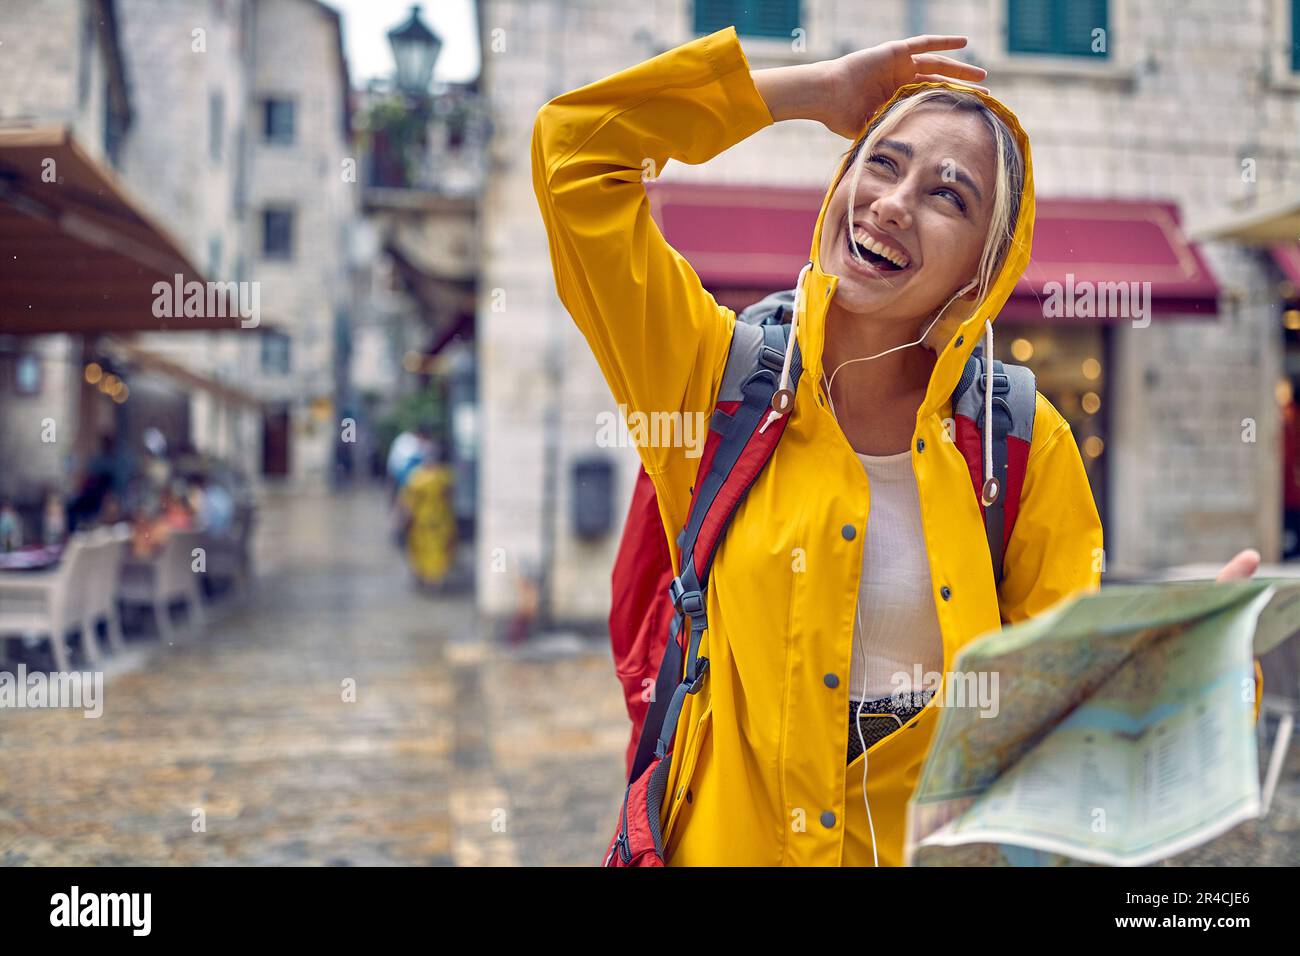 Camina en la ciudad bajo la lluvia. Mujer turística joven en chubasquero con mapa, sintiéndose feliz, sonriendo. Viaje en ciudad nueva. Turismo, estilo de vida, diversión, concepto. Foto de stock